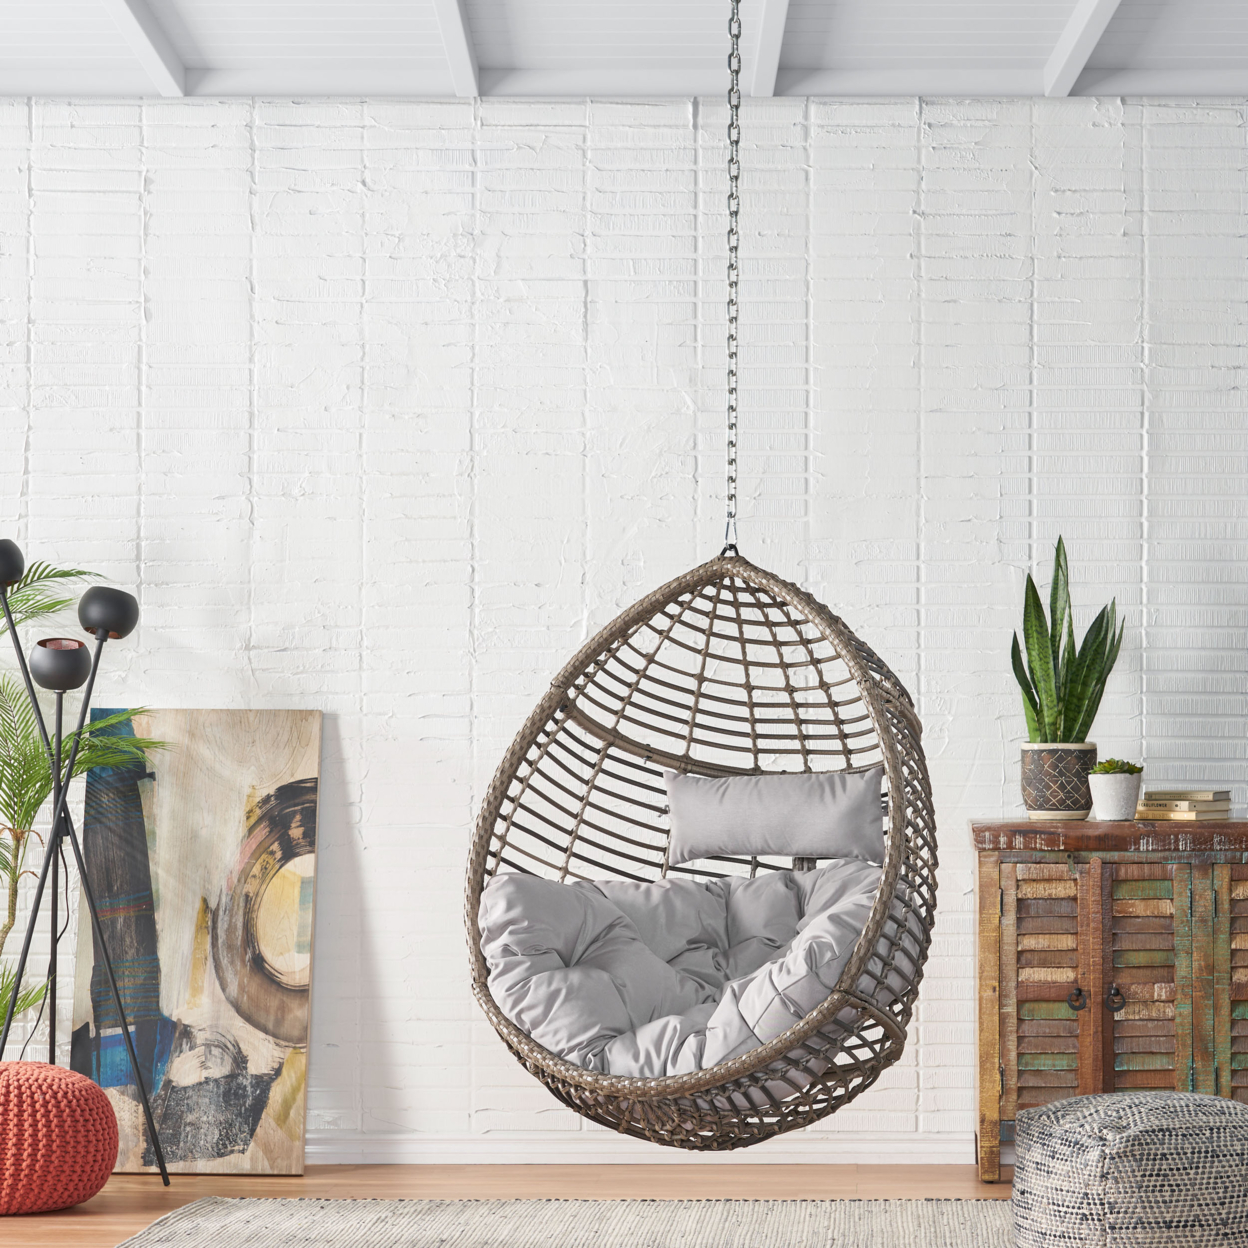 Hempstead Indoor/Outdoor Wicker Hanging Teardrop / Egg Chair (NO STAND) - Gray